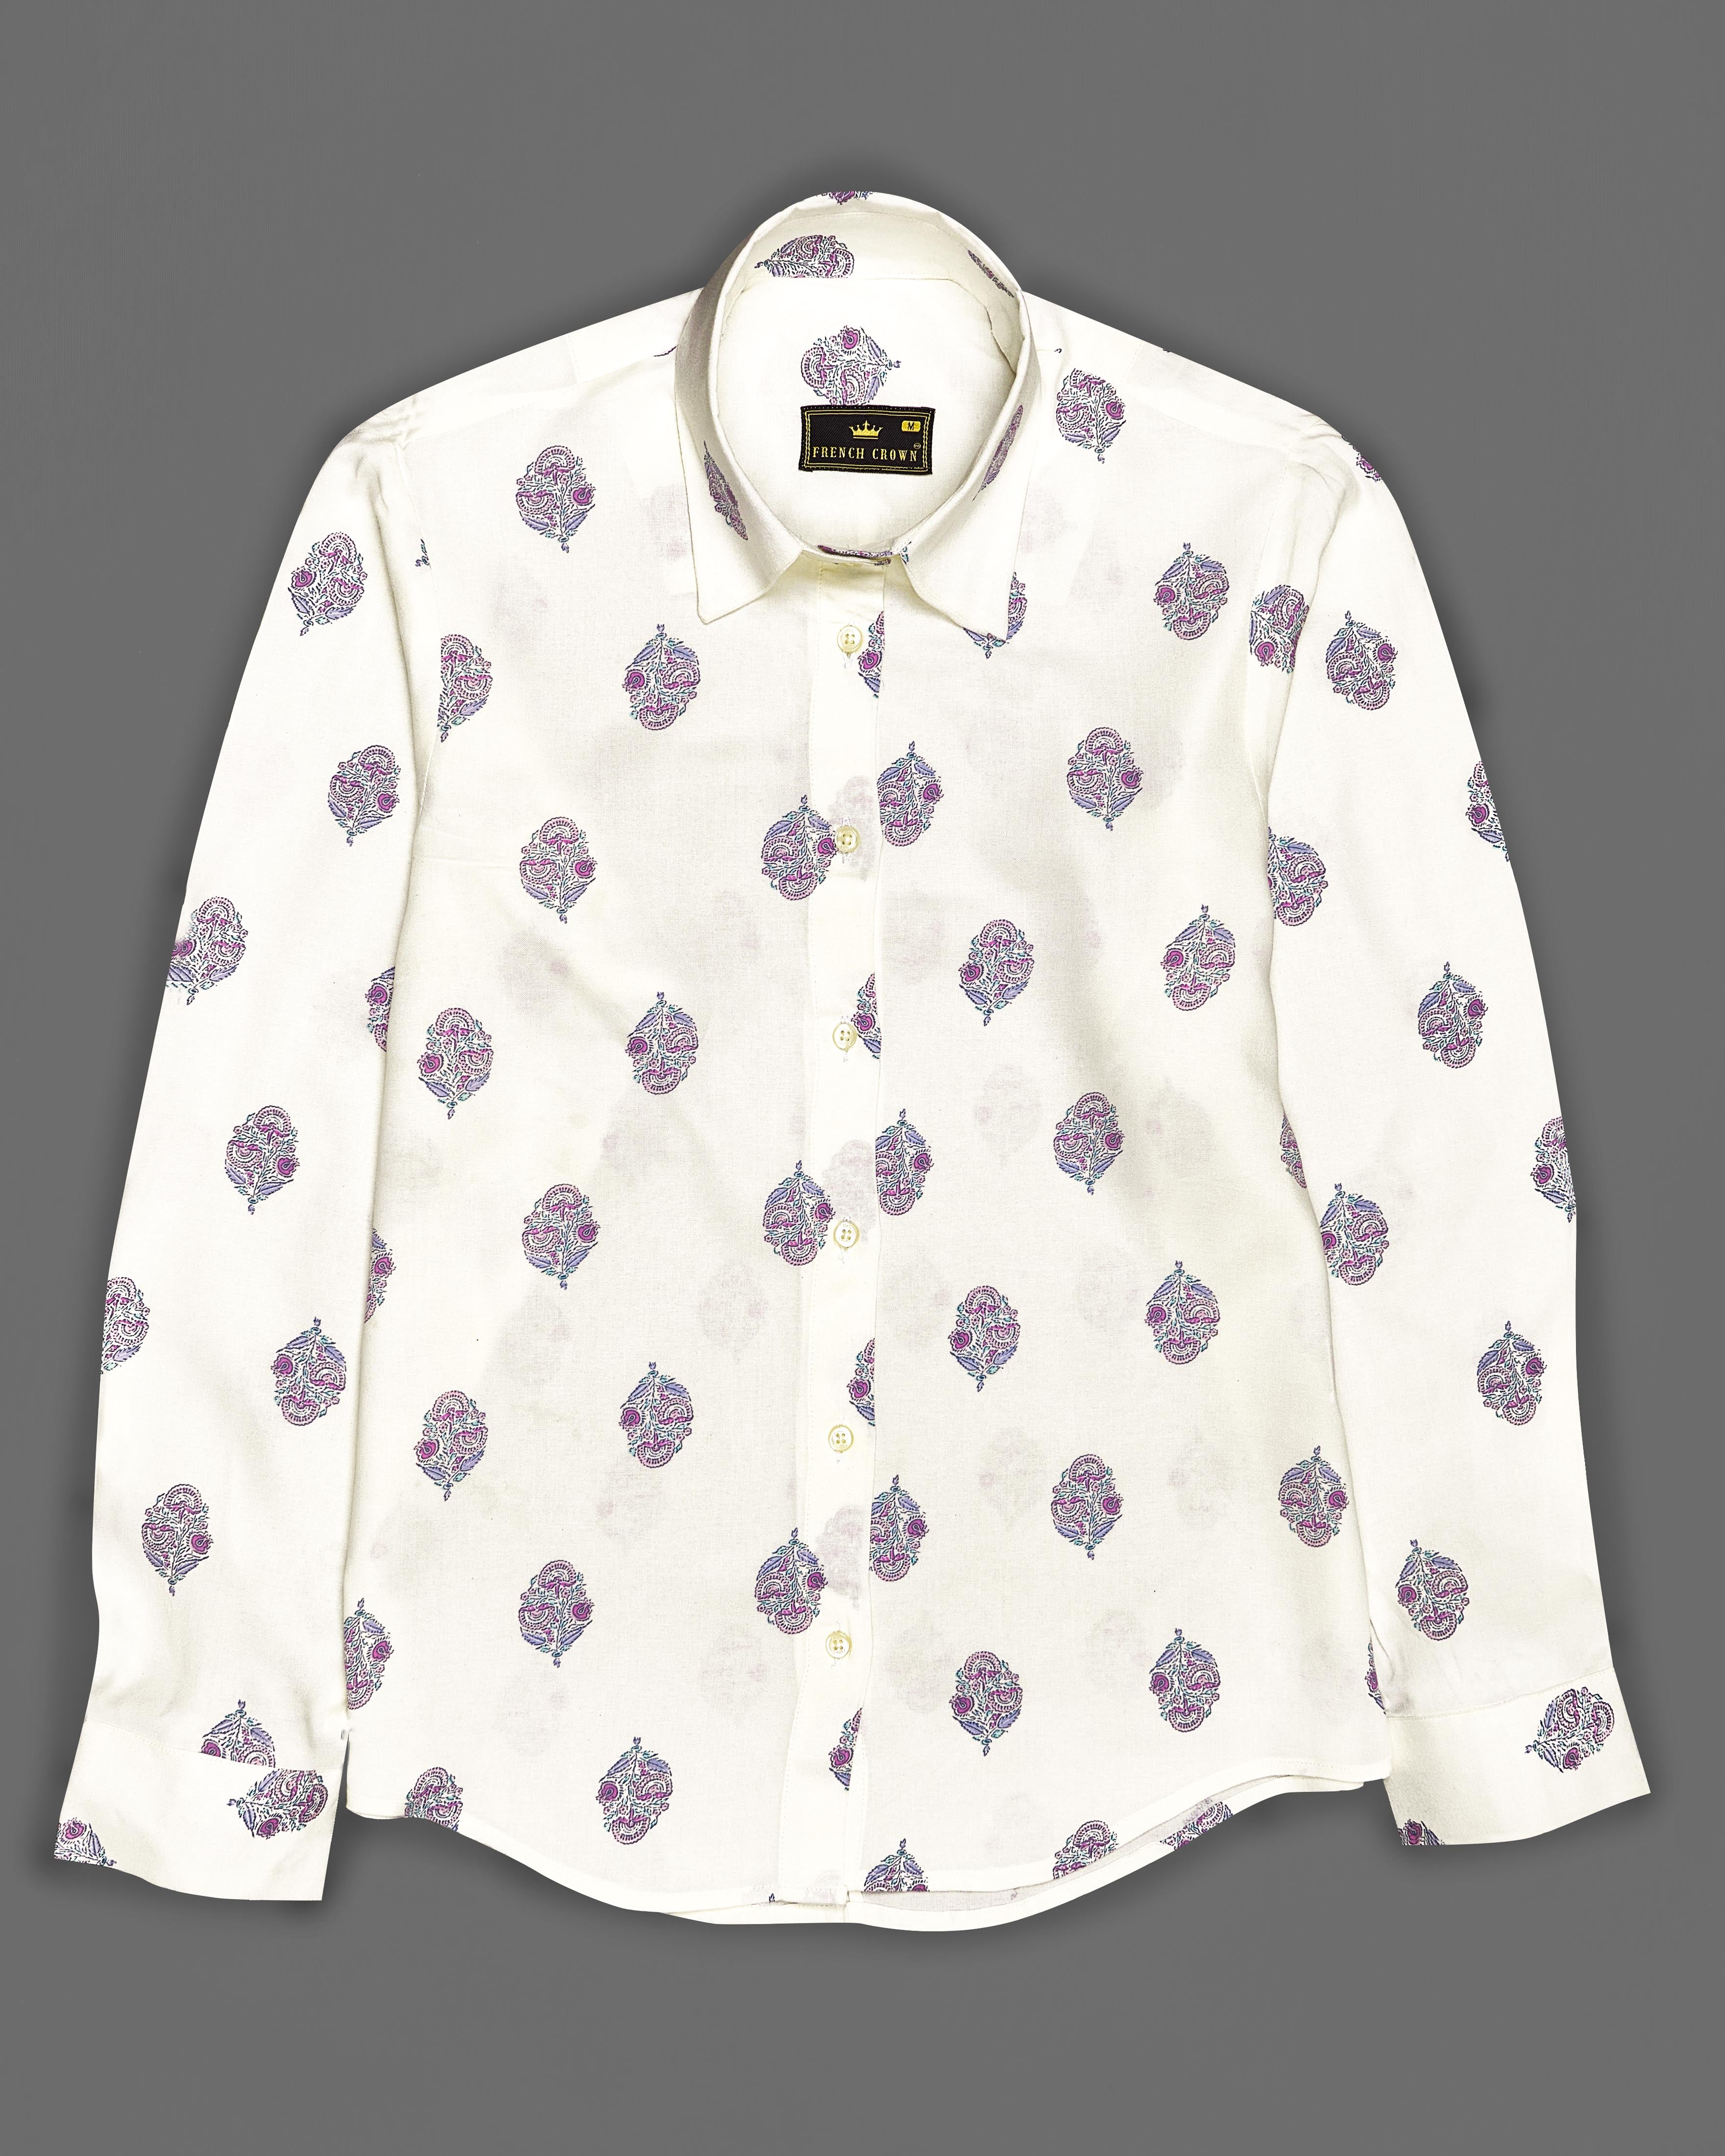 Dawn Cream Printed Premium Tencel Shirt WS023-32, WS023-34, WS023-36, WS023-38, WS023-40, WS023-42